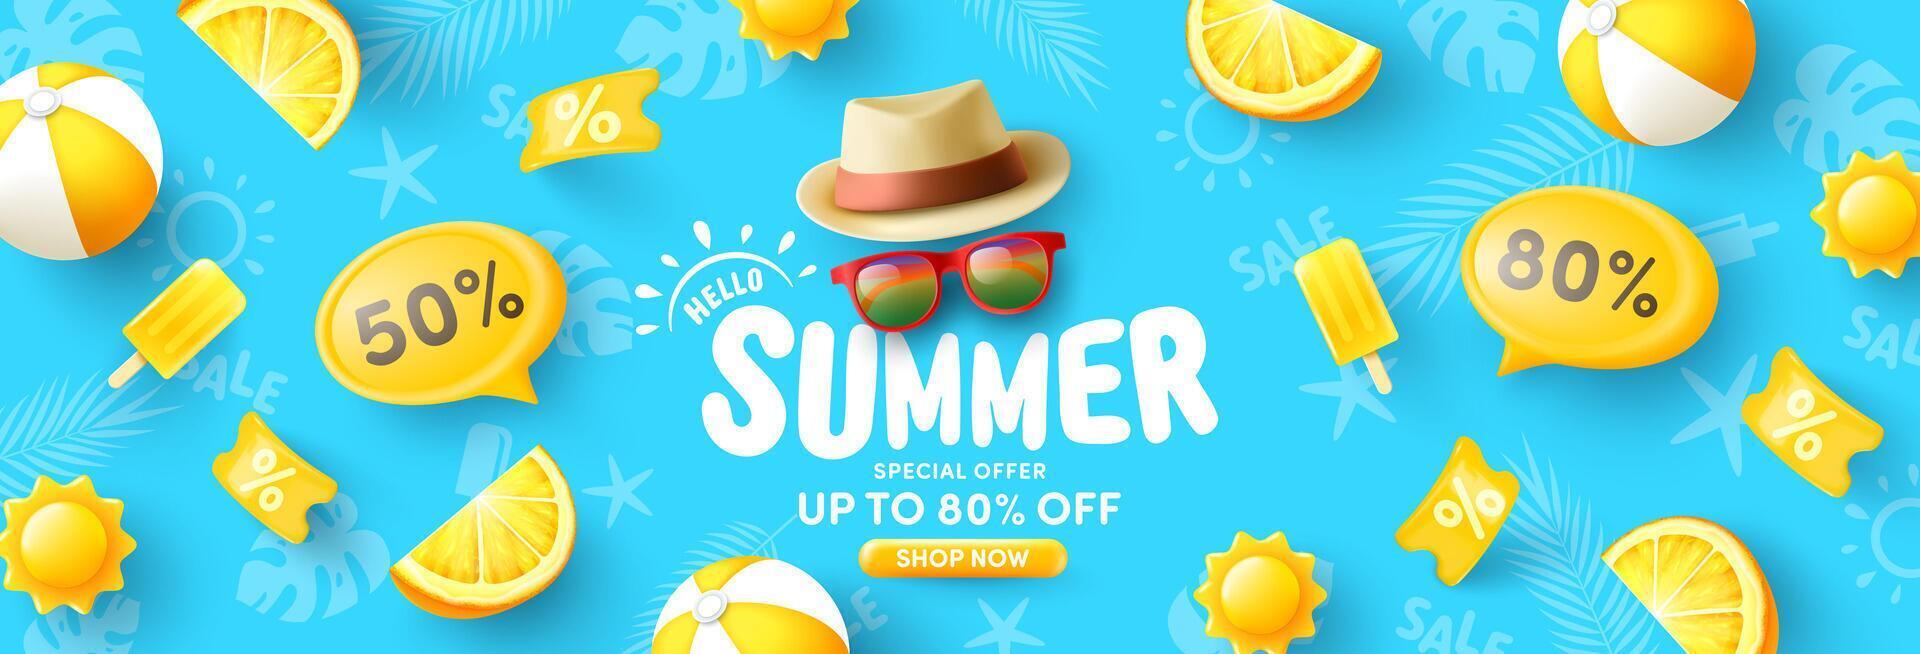 colorida verão venda bandeira modelo com chapéu, óculos de sol, praia bola e de praia verão item dentro cor amarelo em azul plano de fundo.promoção e compras modelo para verão temporada. vetor